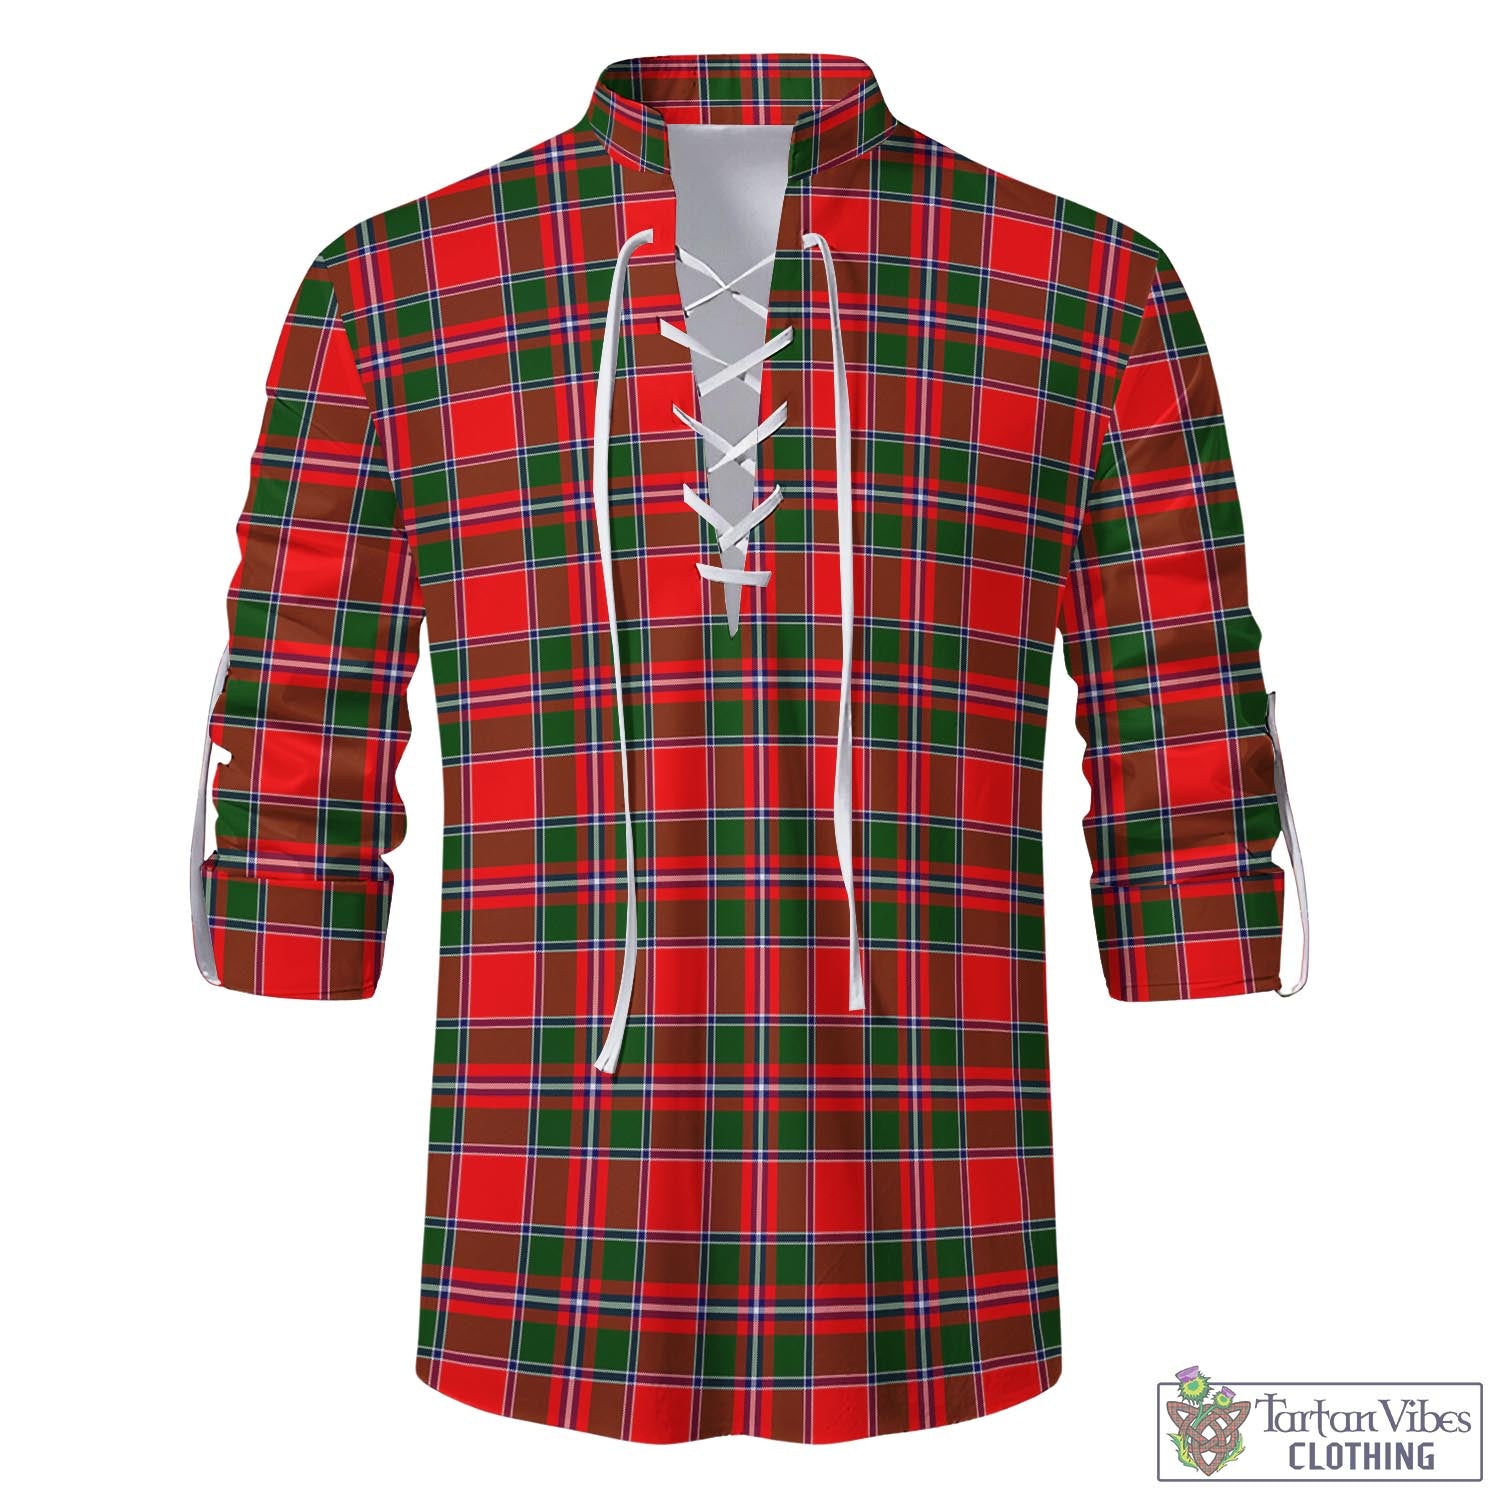 Tartan Vibes Clothing Spens Modern Tartan Men's Scottish Traditional Jacobite Ghillie Kilt Shirt